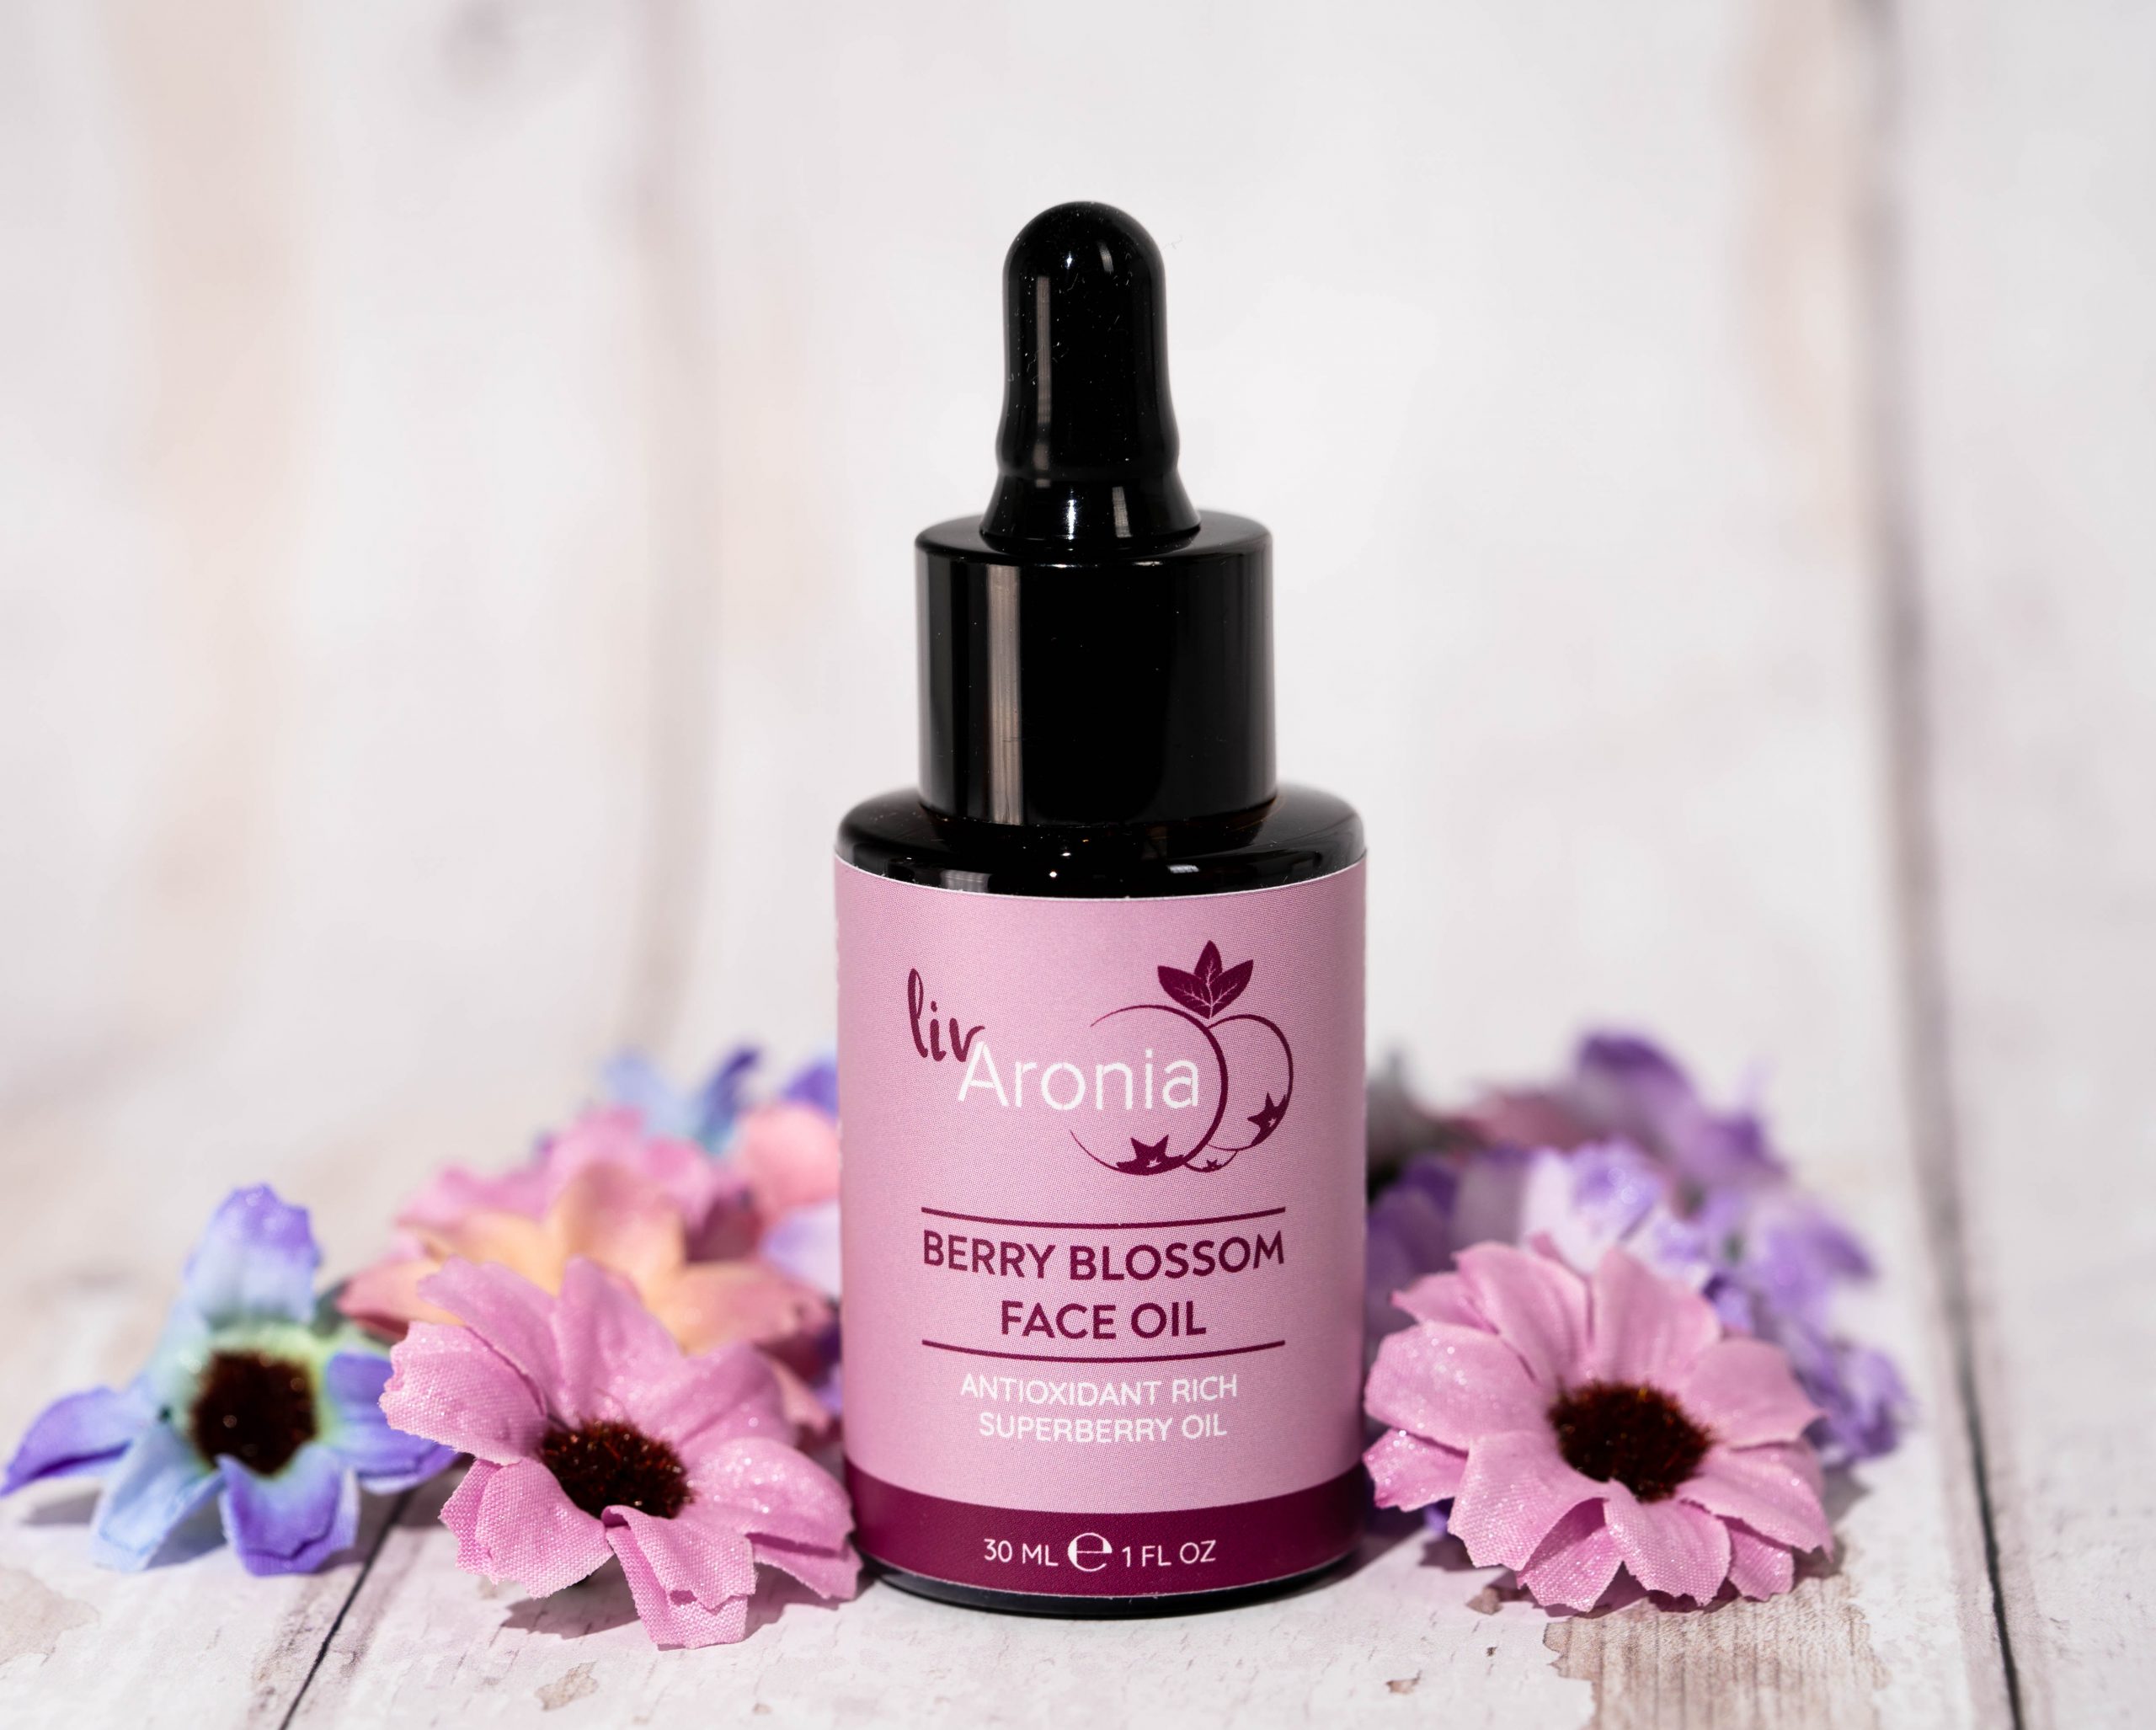 Liv Aronia Berry Blossom Face Oil